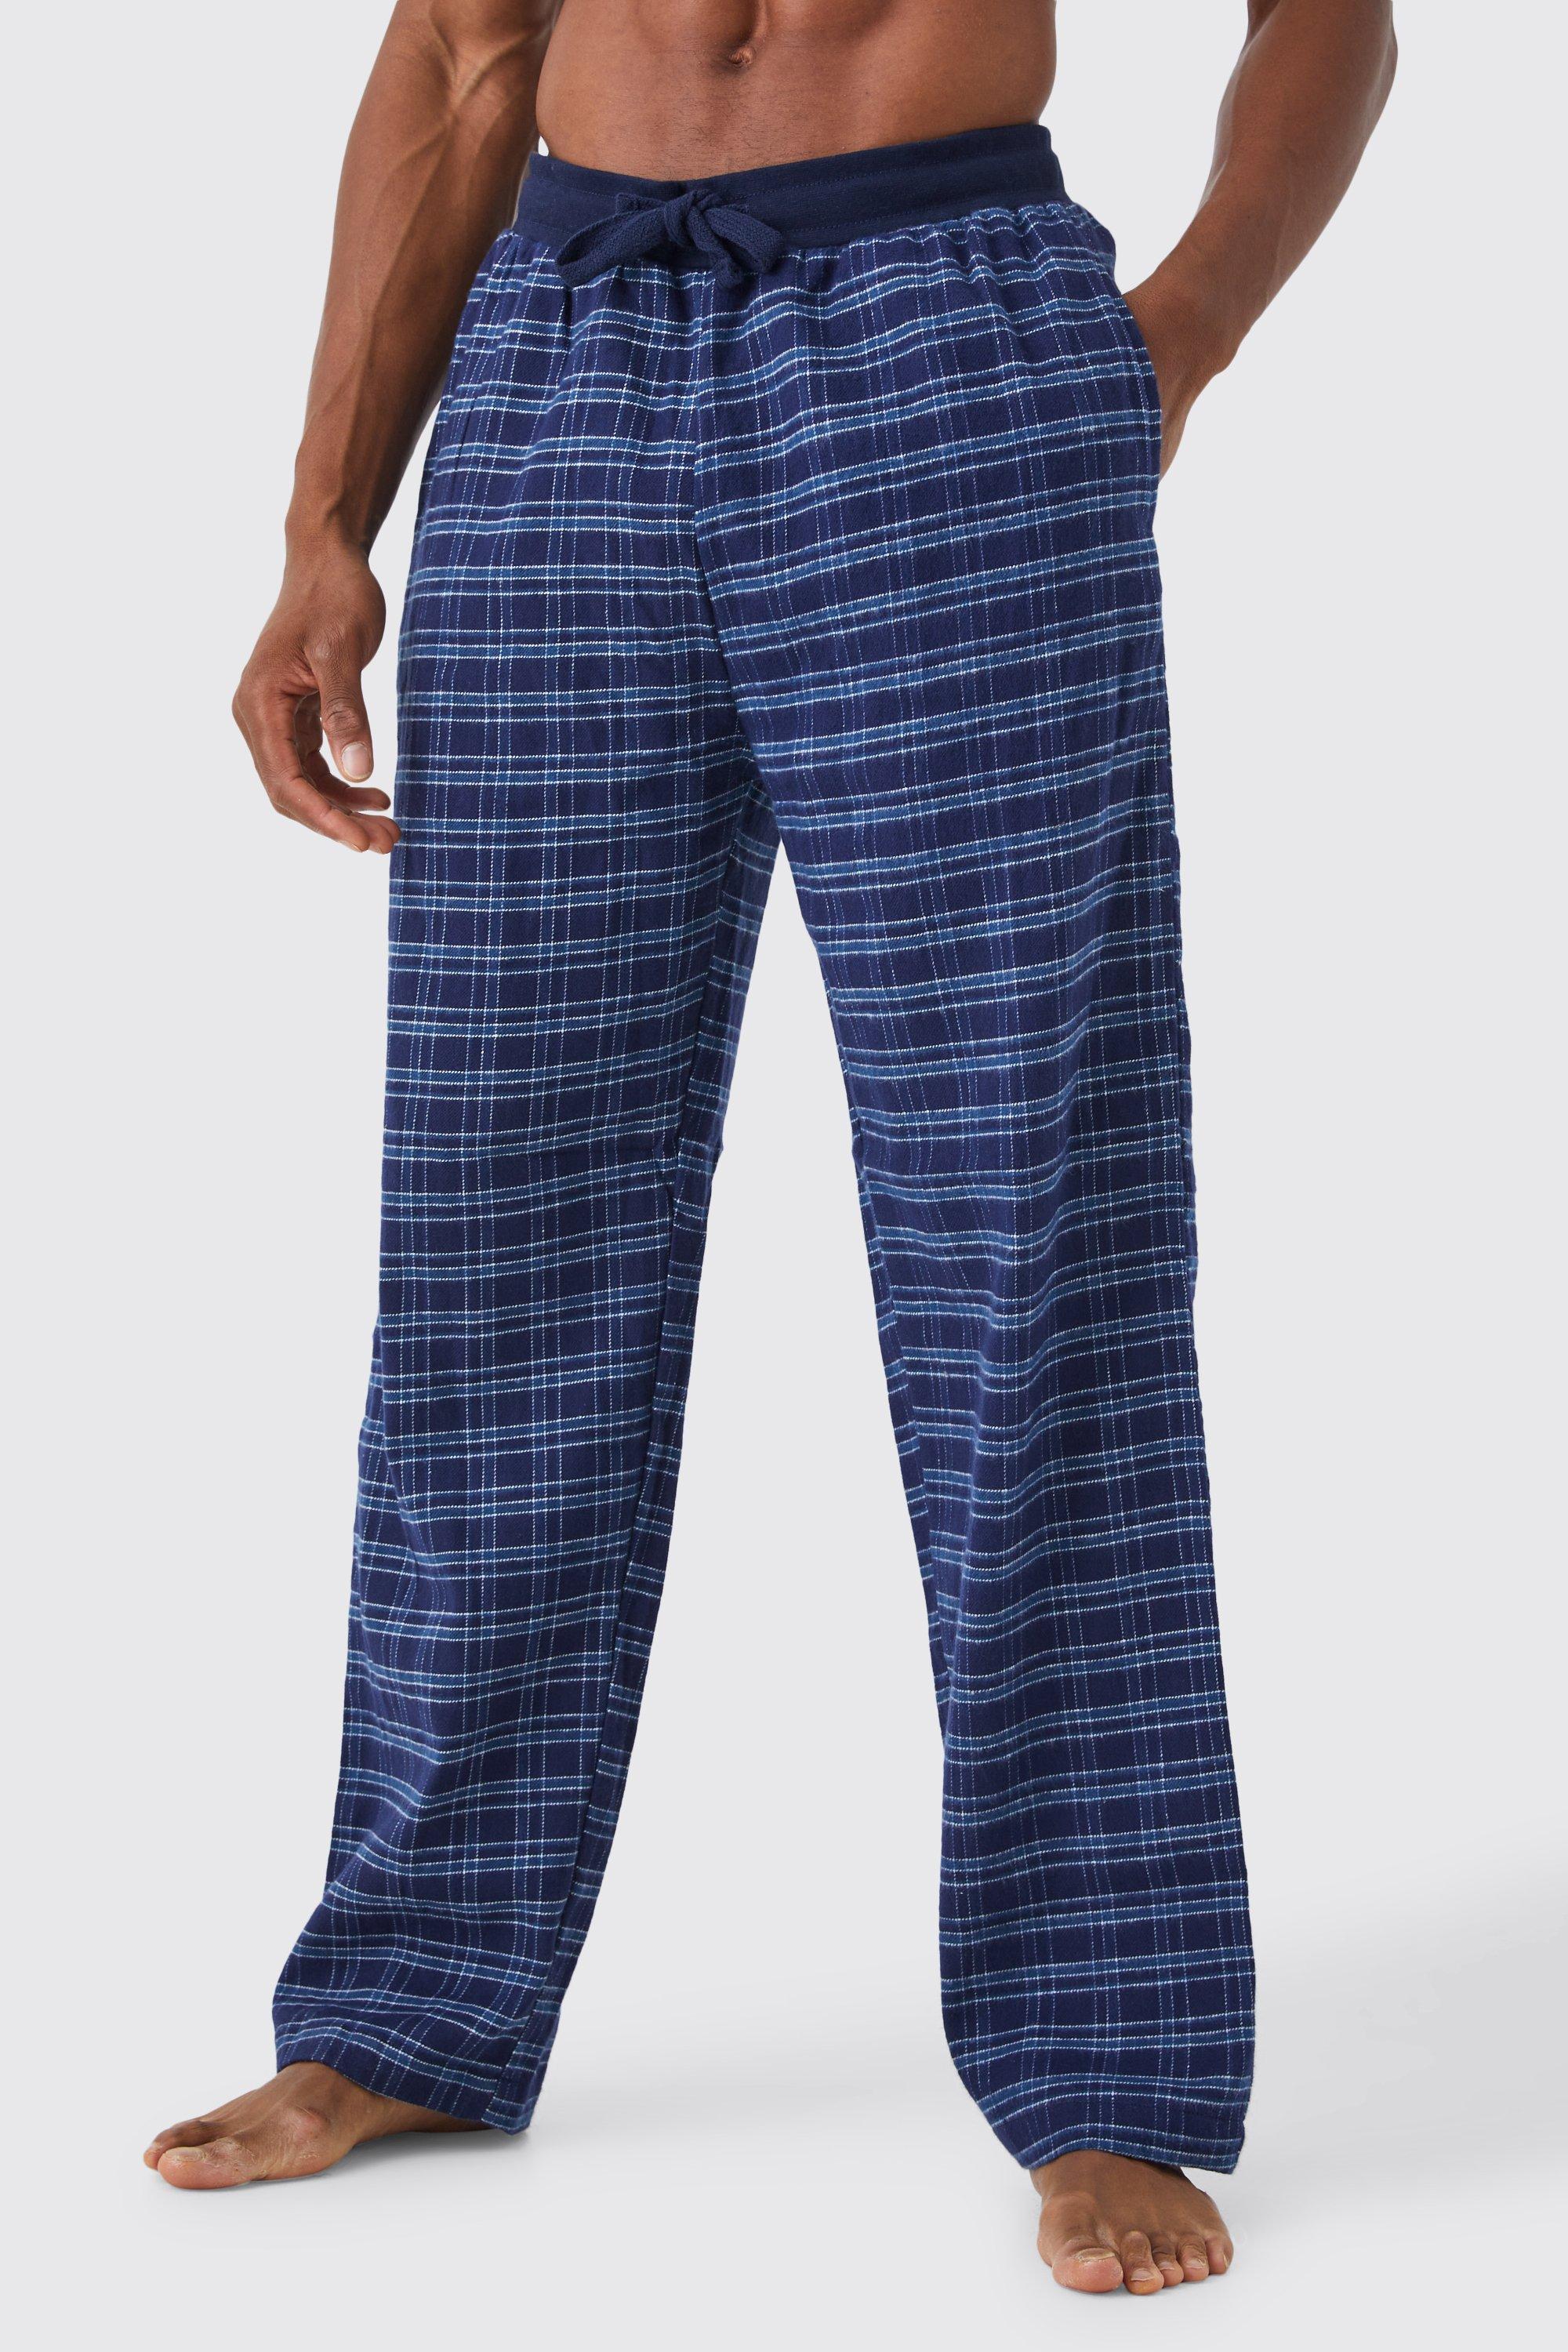 pantalon de pyjama à carreaux homme - bleu - s, bleu